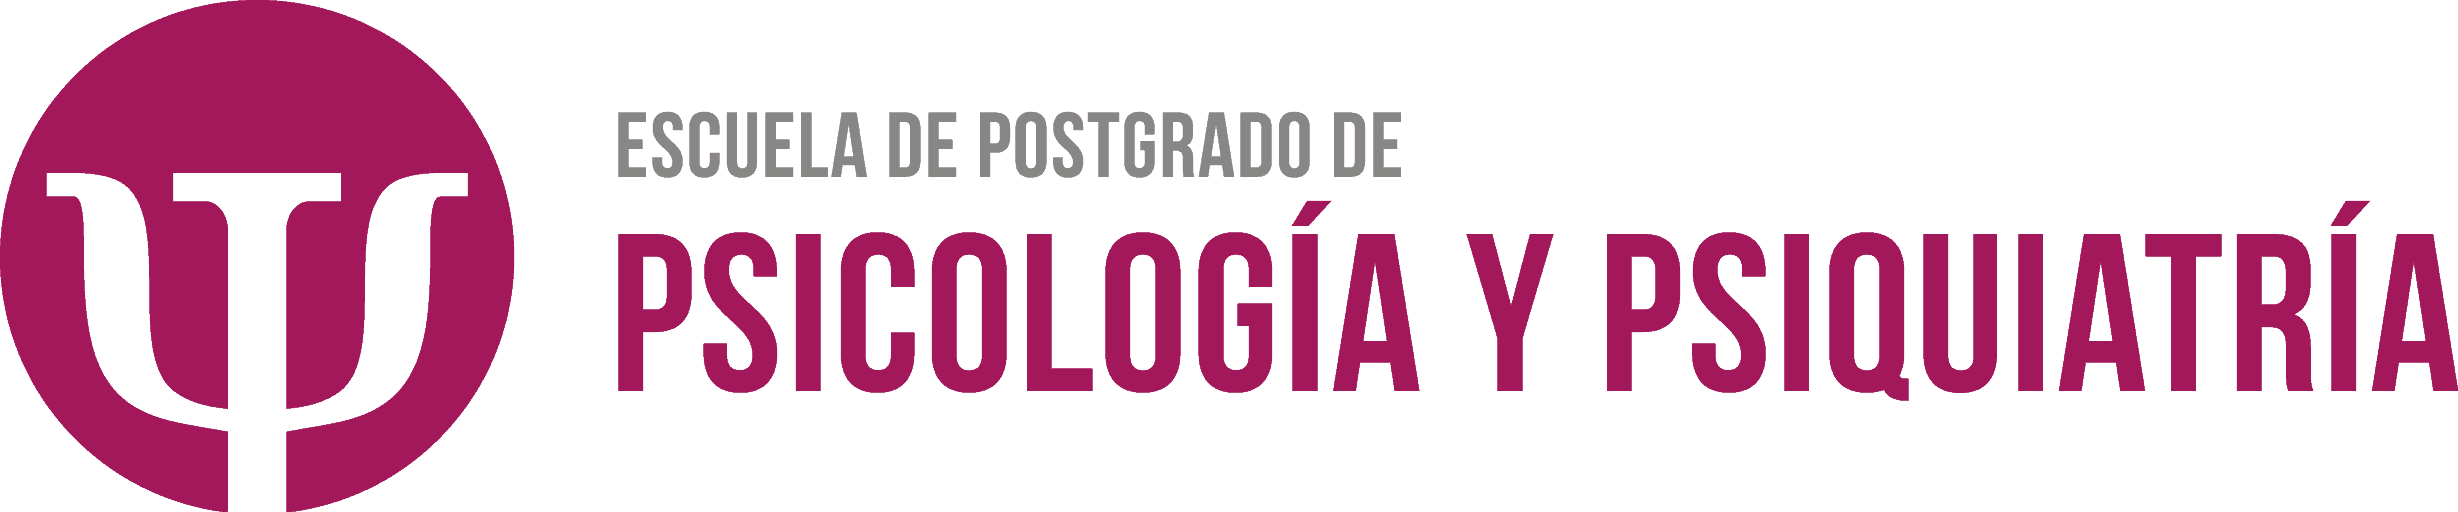 Escuela de Postgrado de Psicología y Psiquiatría - Latinoamérica